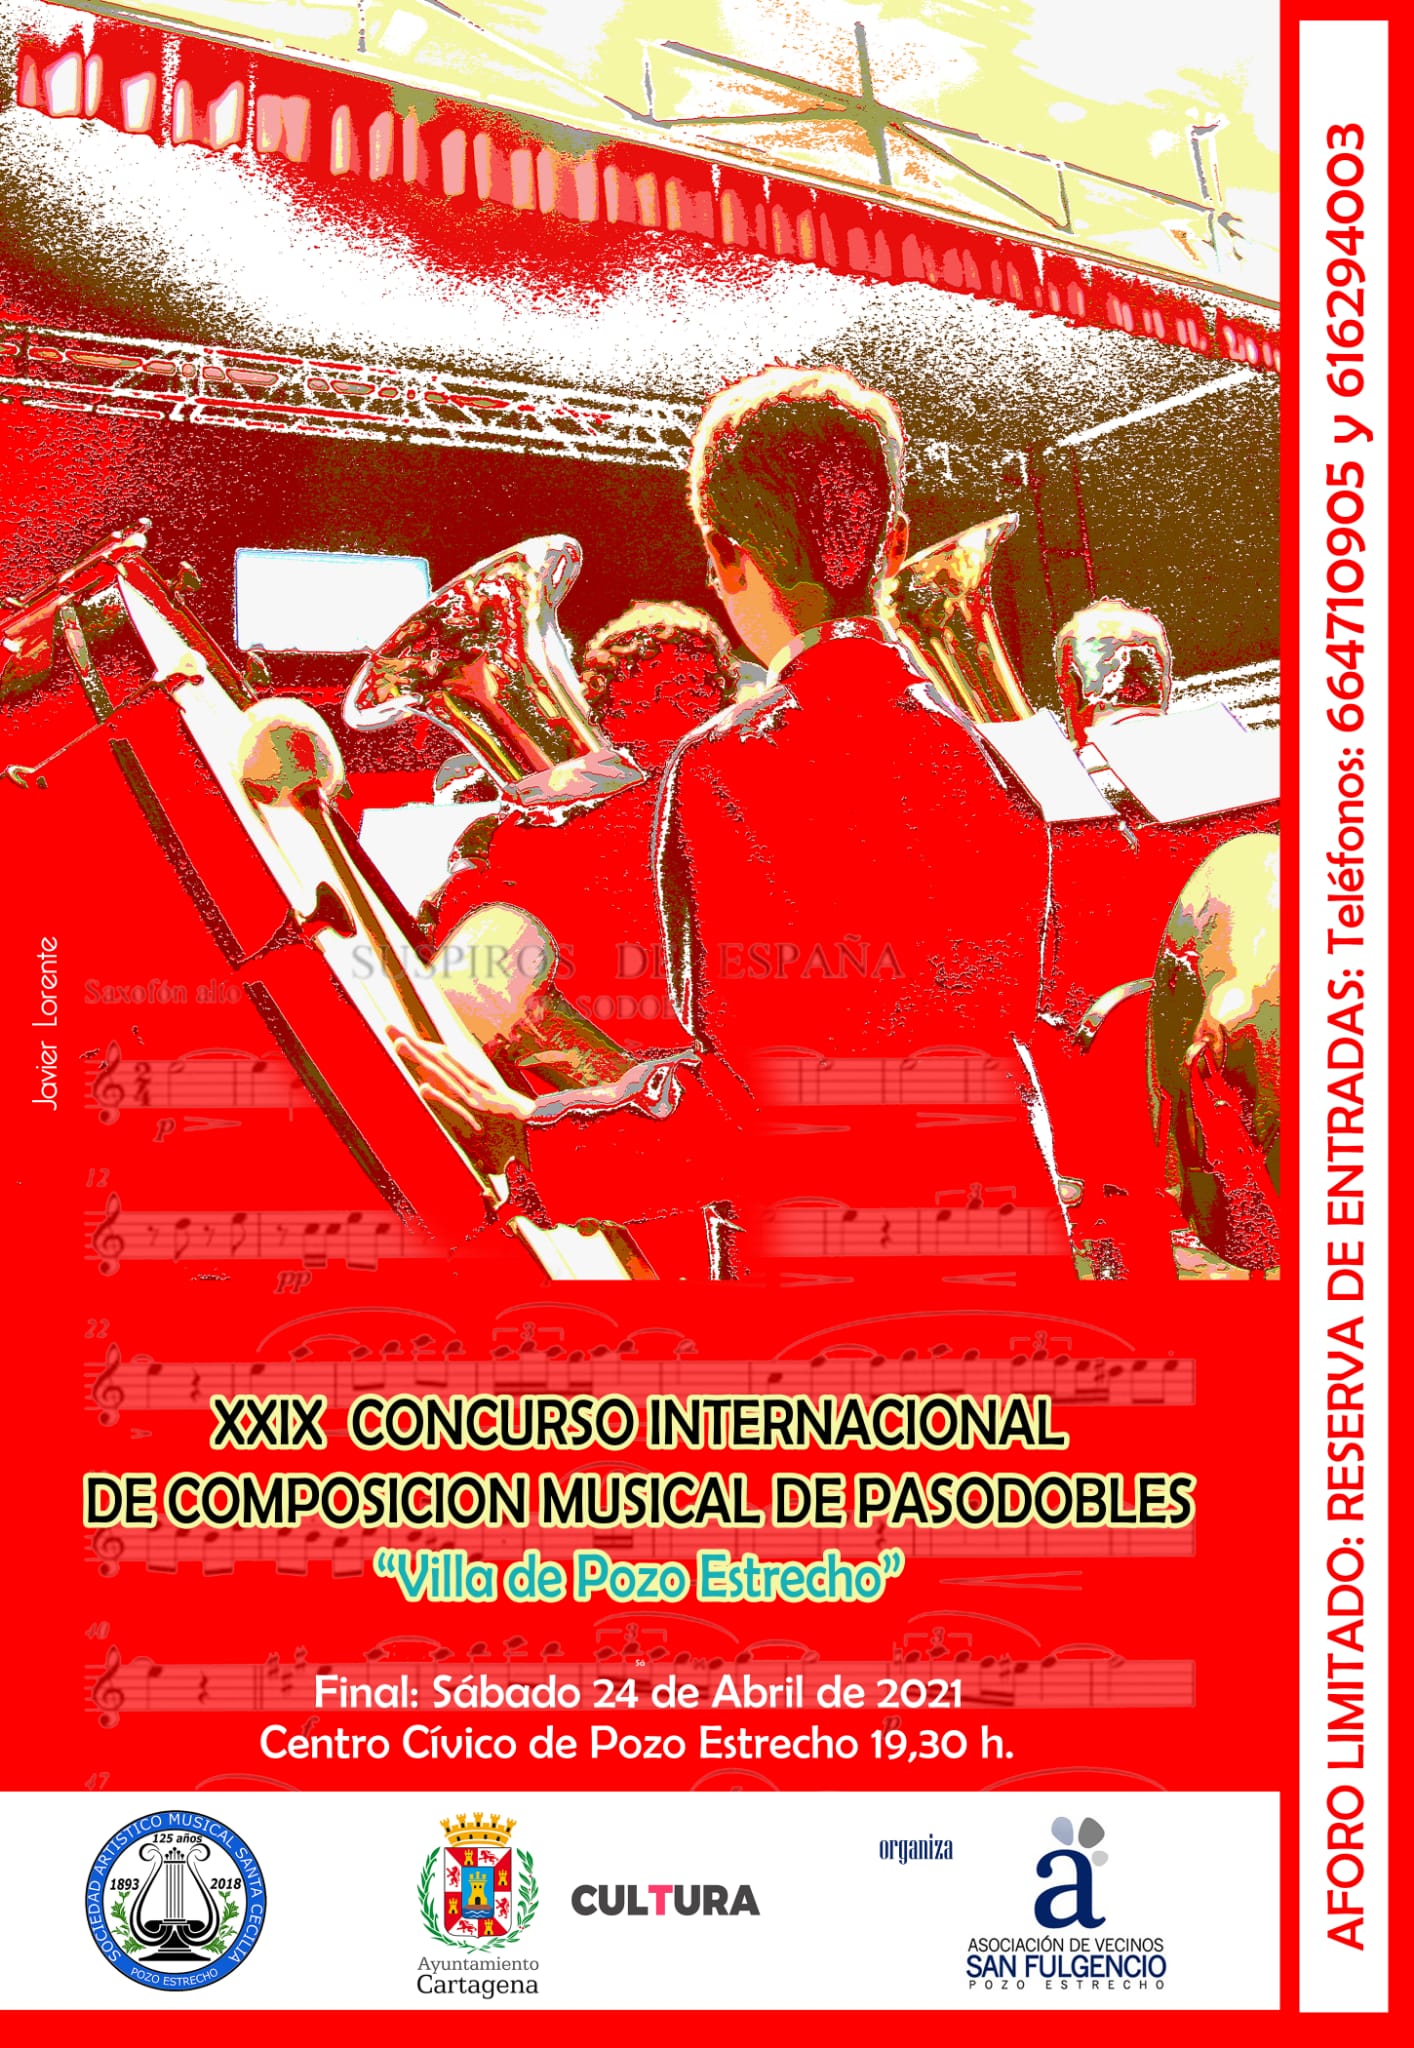 XXIX Concurso Internacional de Composición Musical de Pasodobles